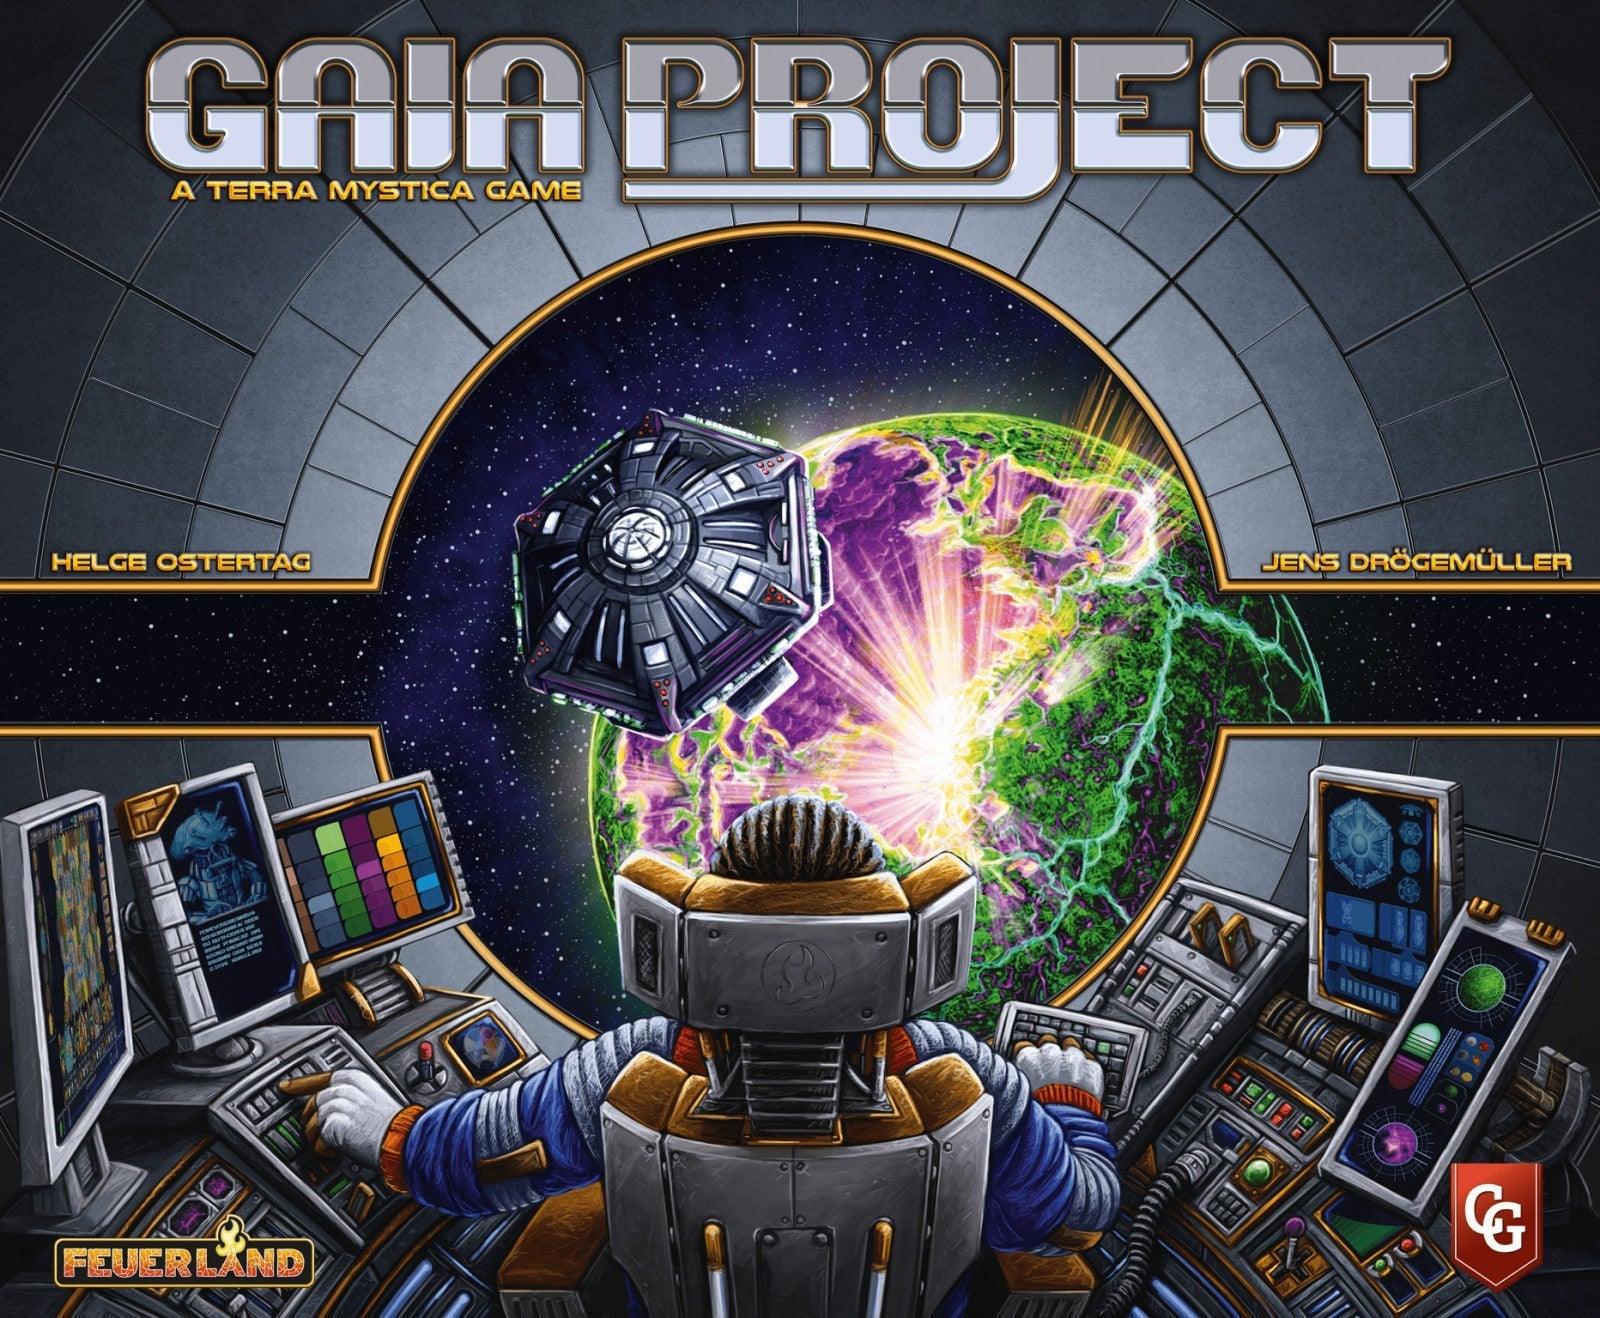 VR-47204 Gaia Project a Terra Mystica Game - Capstone Games - Titan Pop Culture